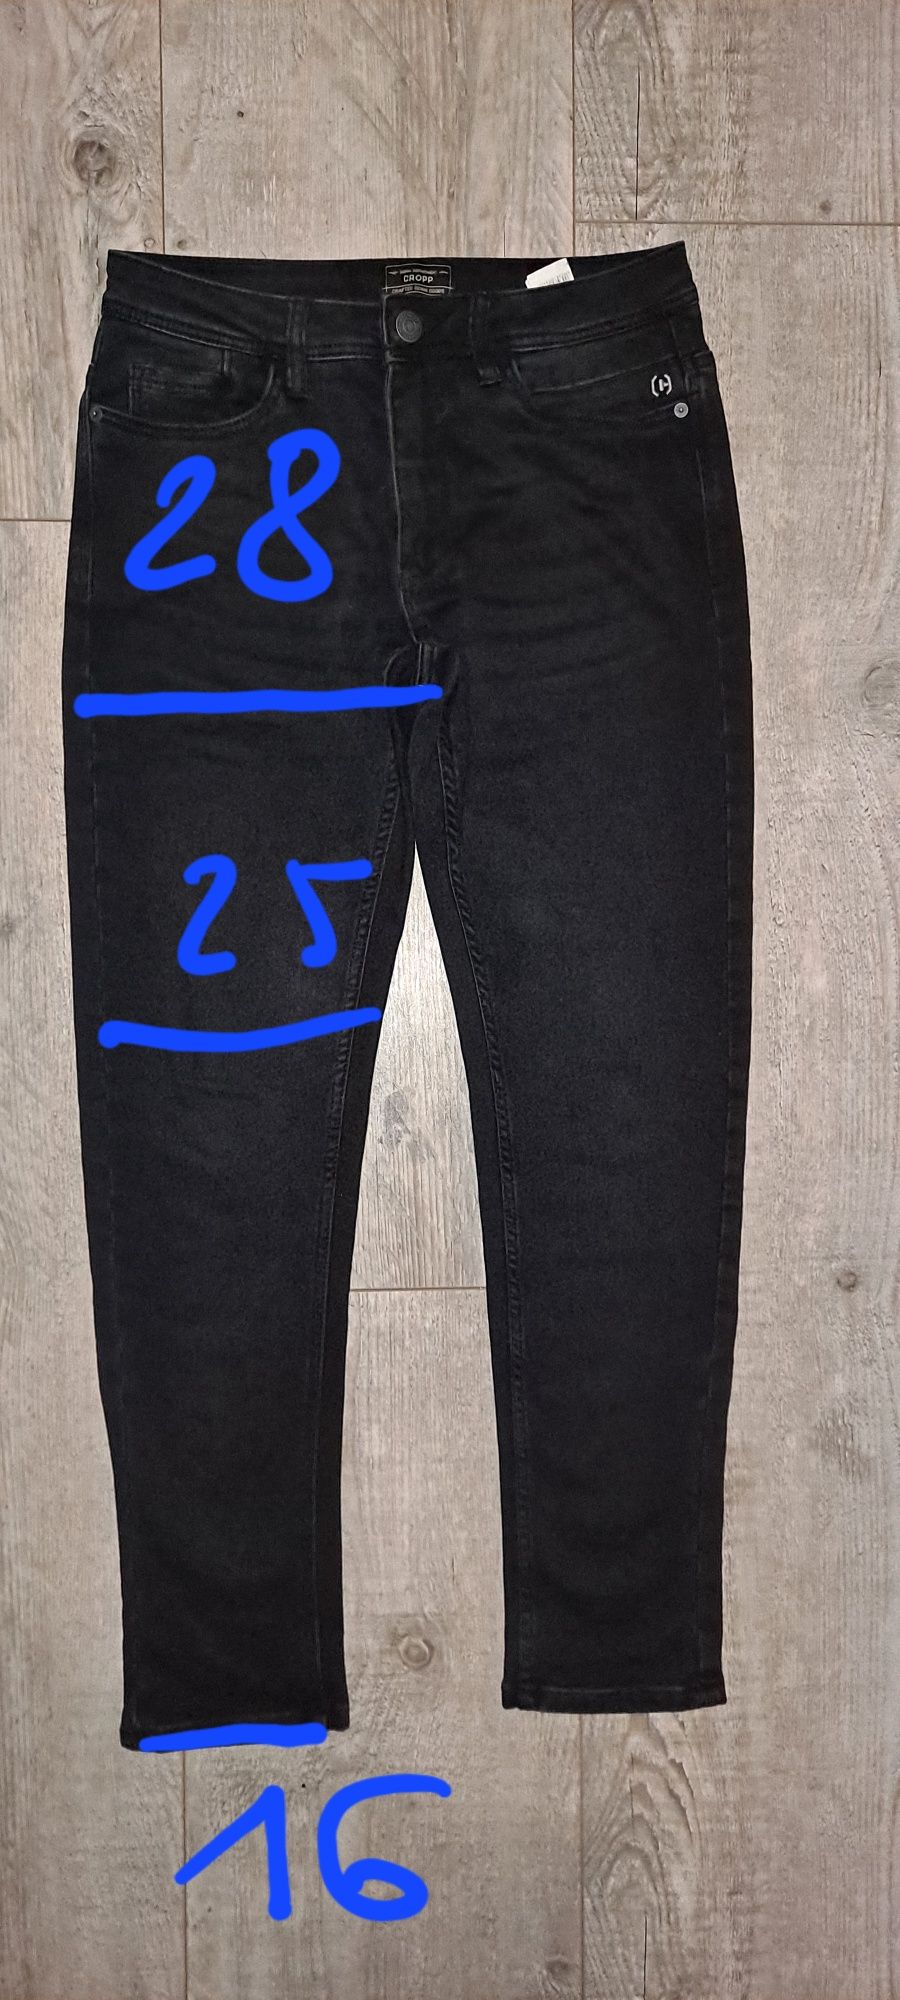 Męskie spodnie jeansowe czarne antracyt Cropp 28/32